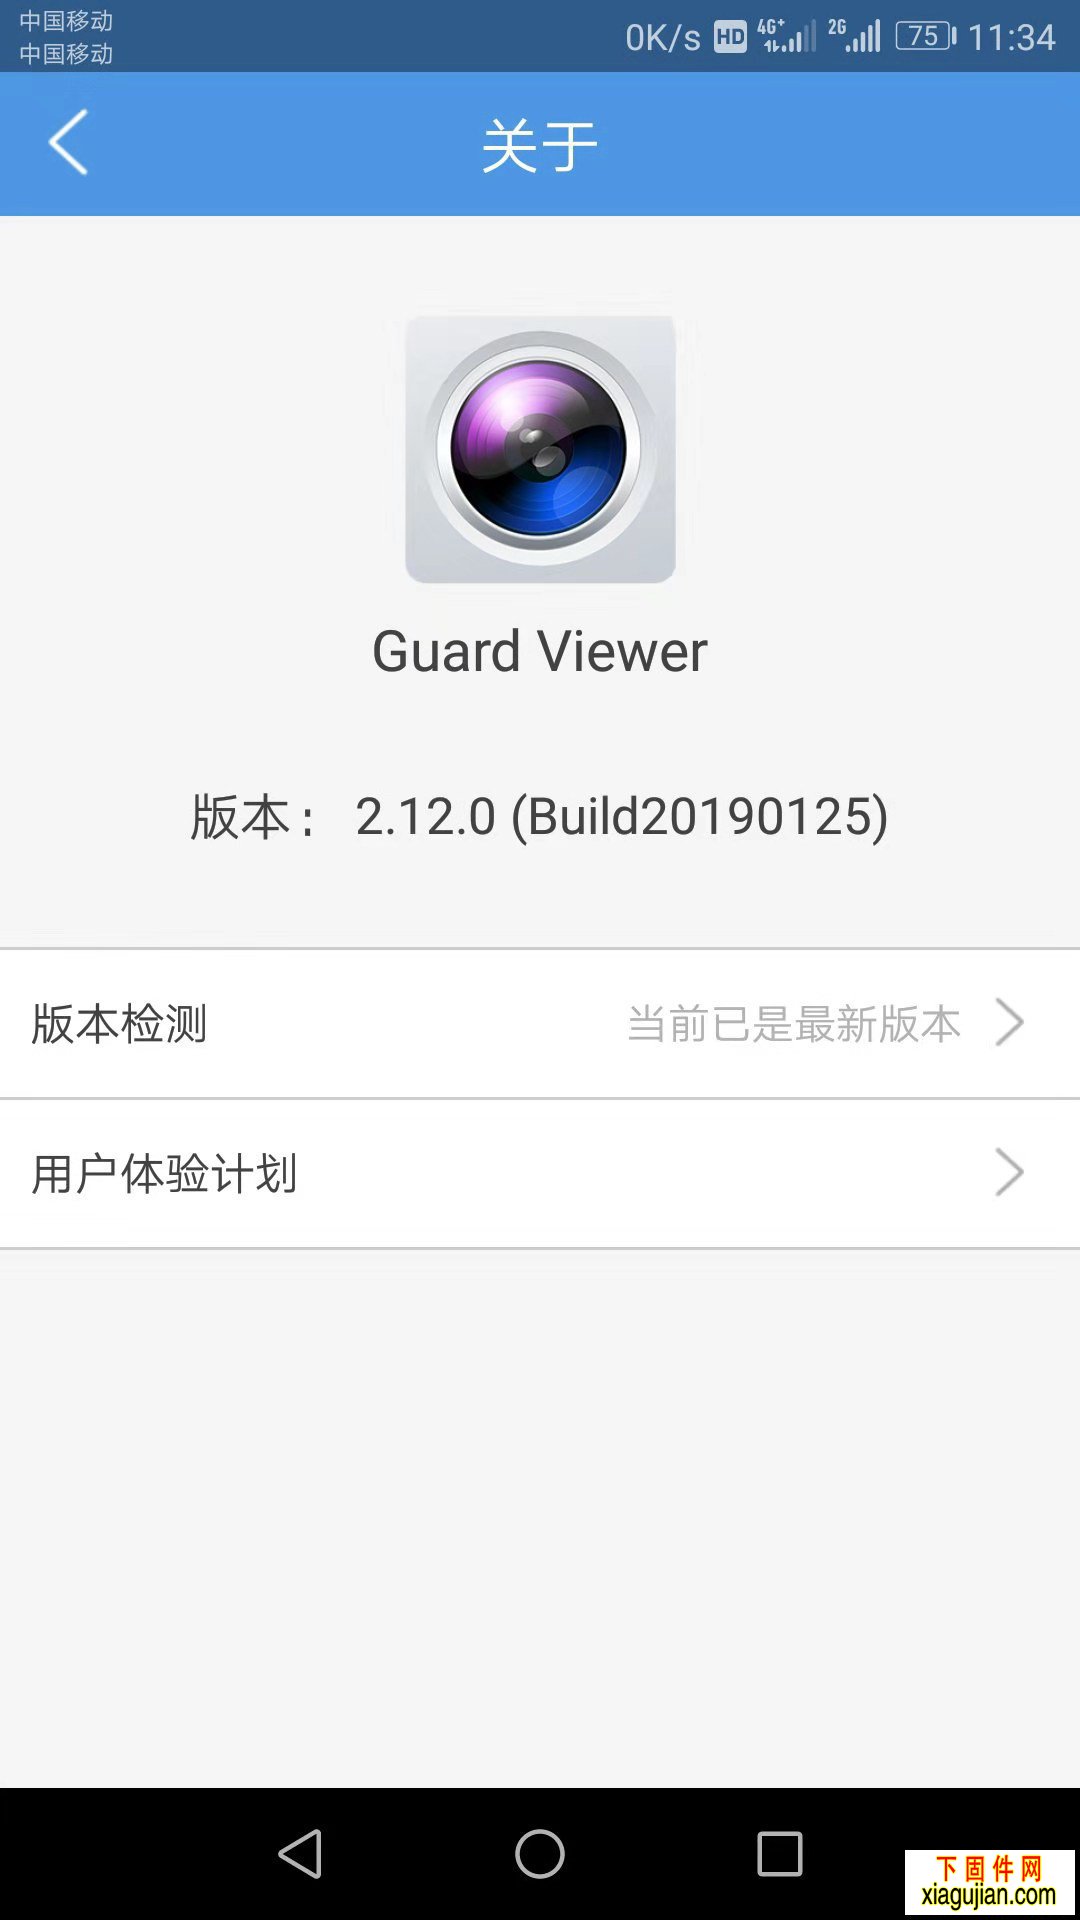 威立信宇视方安H模组手机APP安卓GuardViewer2.12.0Build20190125